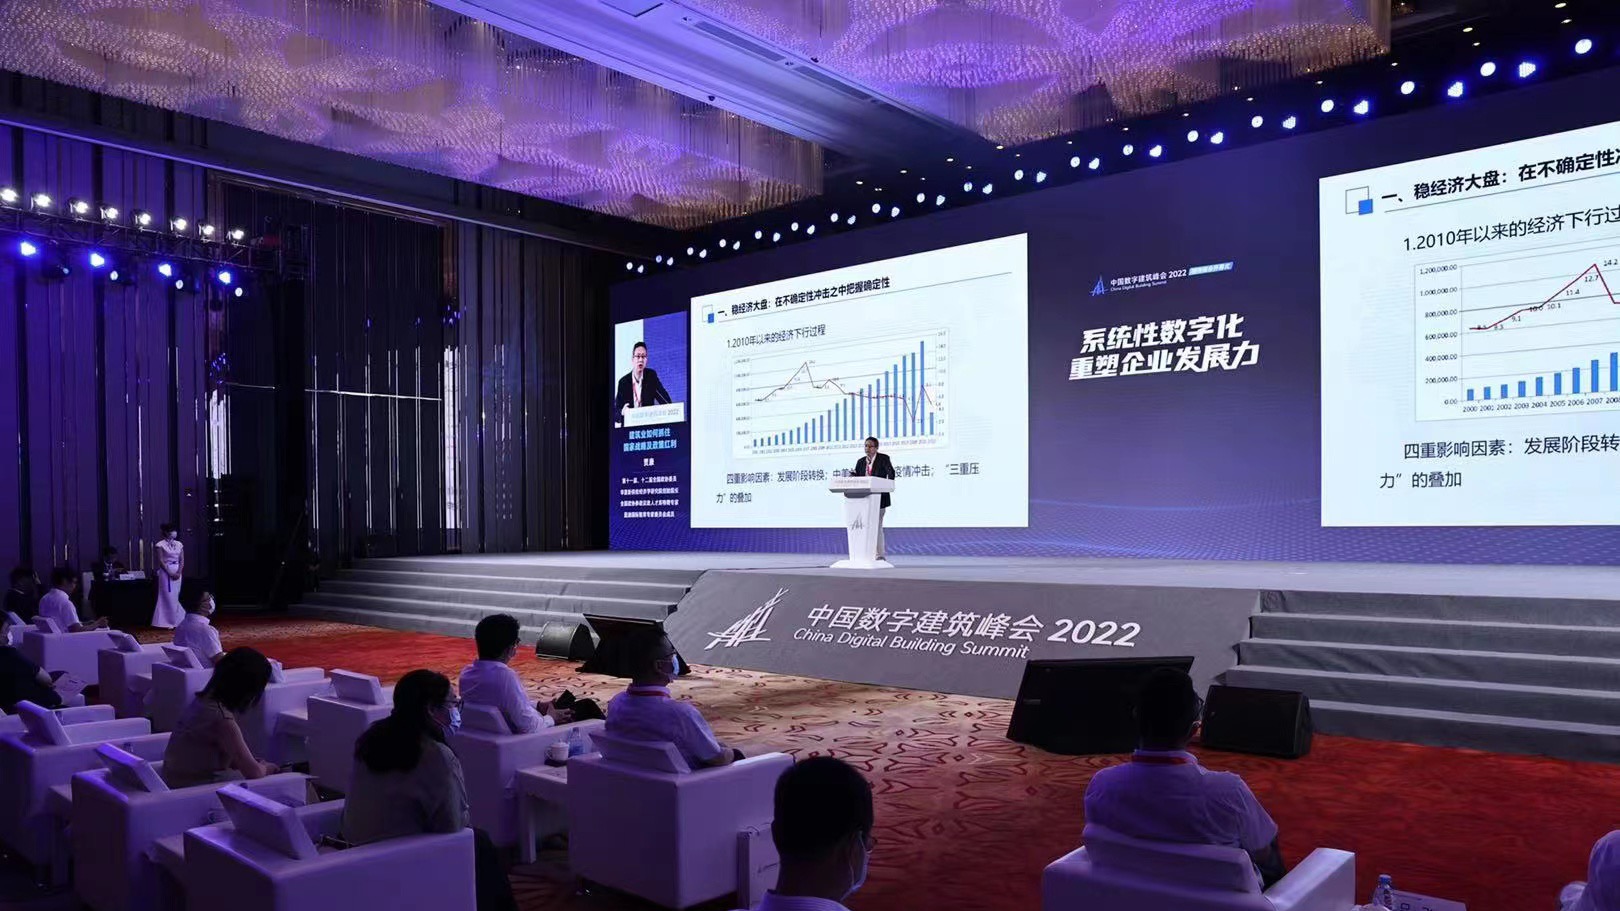 中国数字建筑峰会2022城市峰会开幕式在广州开幕